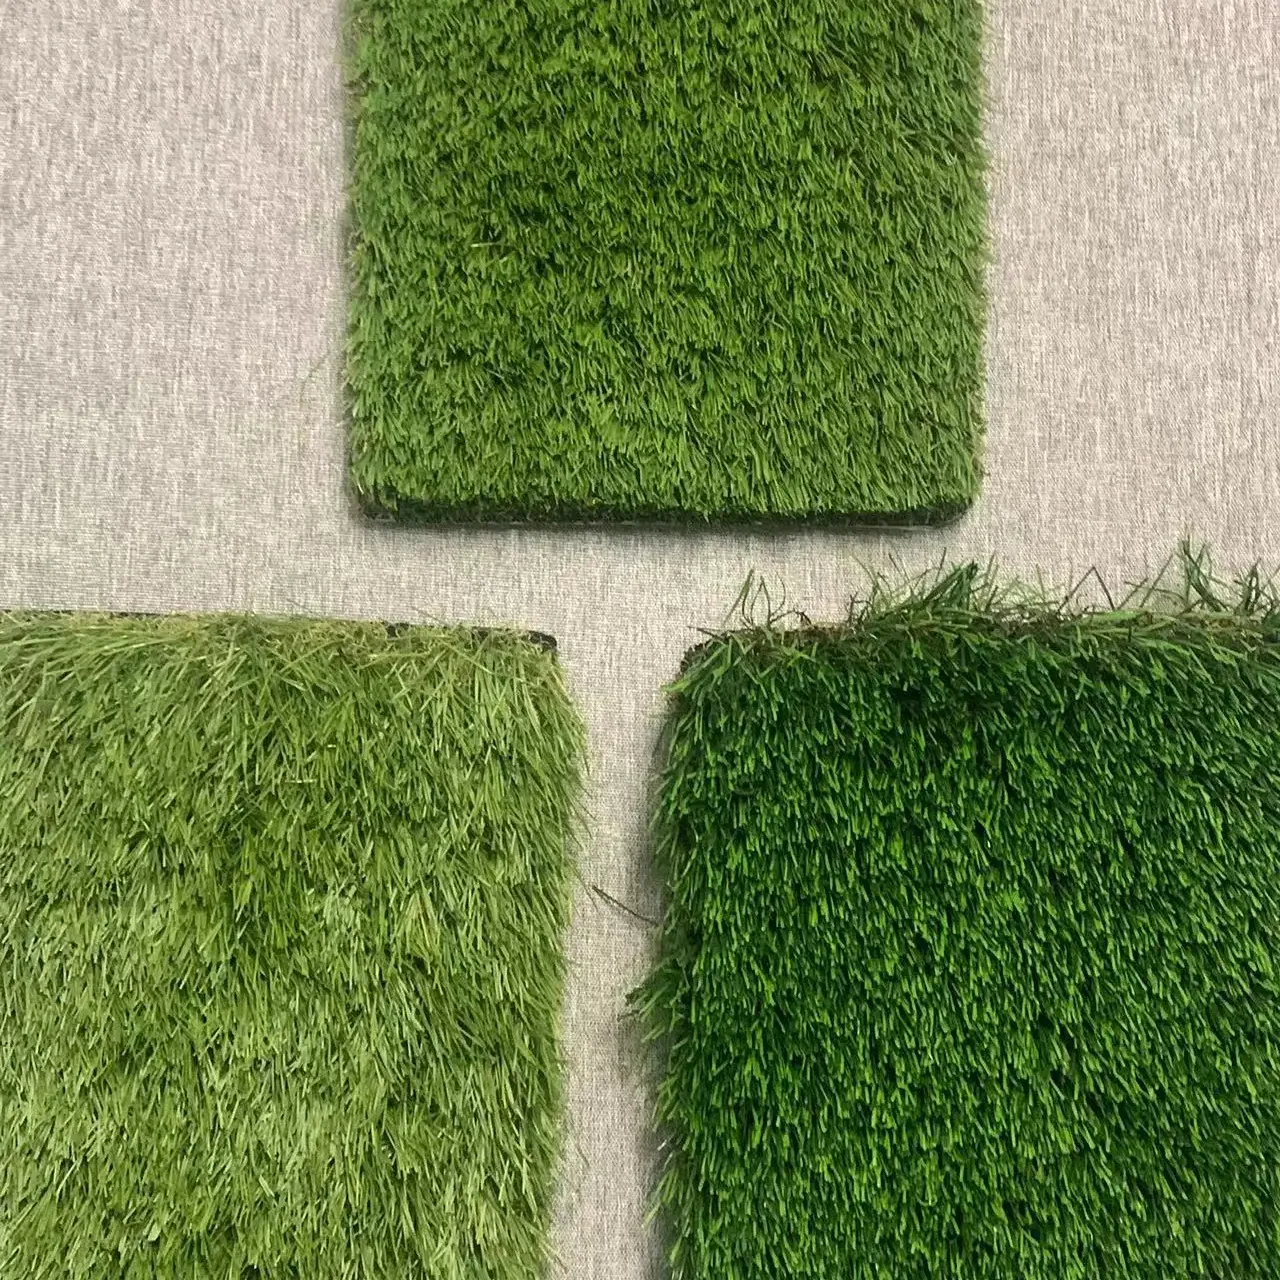 Новый дизайн, толстая газонная искусственная трава для футбольного поля, 50 мм/60 мм, весна и осень, от 3 до 5 видов цветов, яркий газон